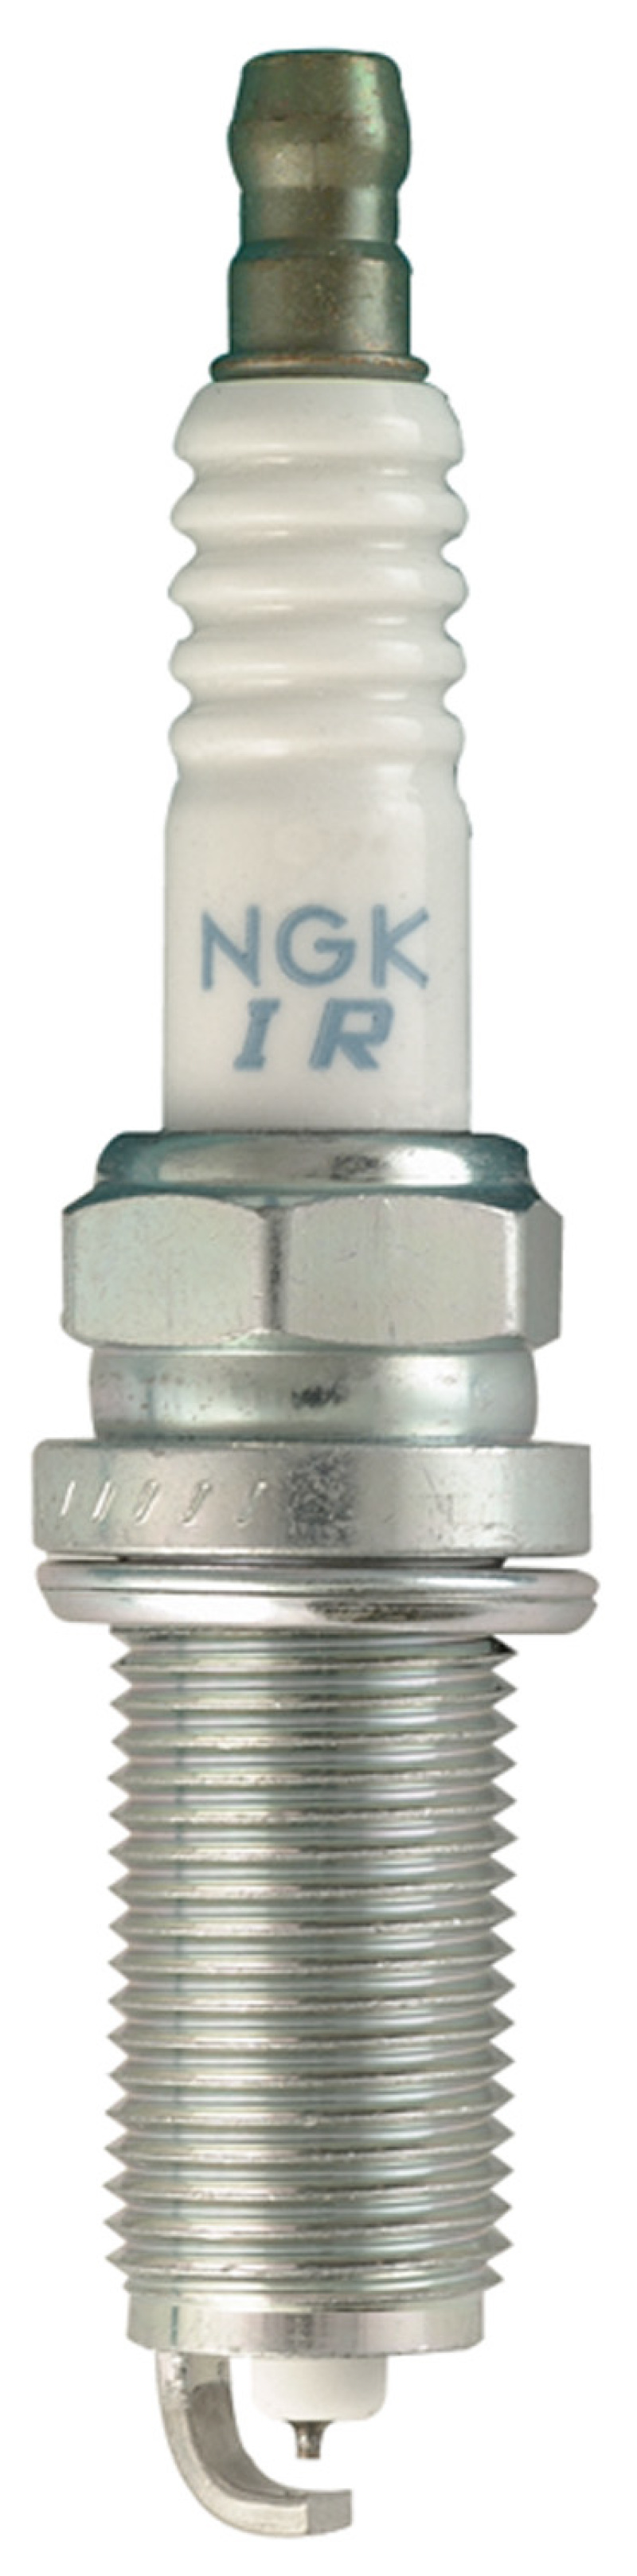 NGK Laser Iridium Spark Plug Box of 4 (ILFR6T11) - 4904